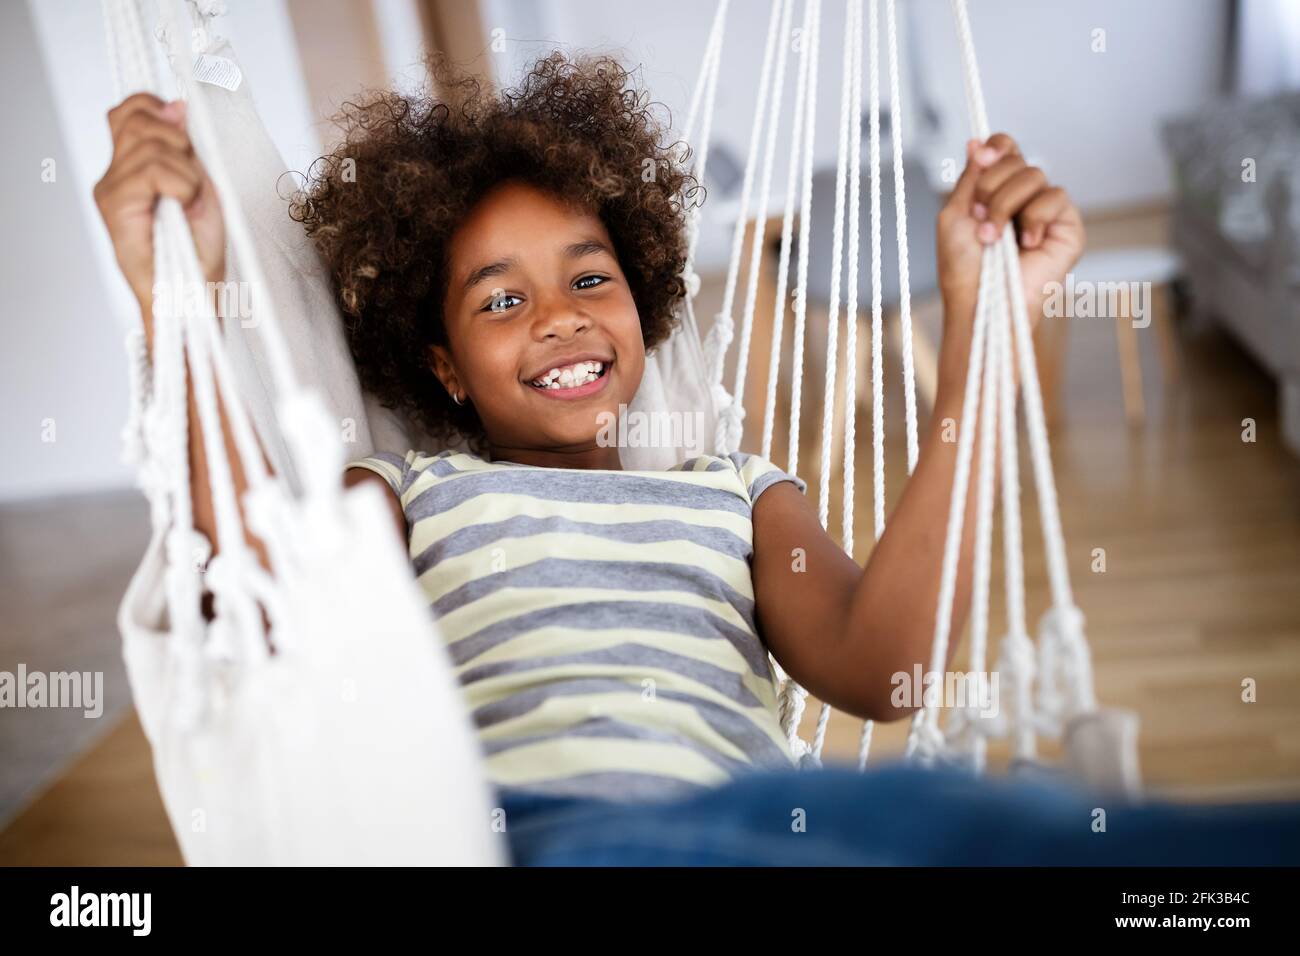 Liebenswert Mädchen genießen auf Indoor Schaukel im Wohnzimmer  Stockfotografie - Alamy